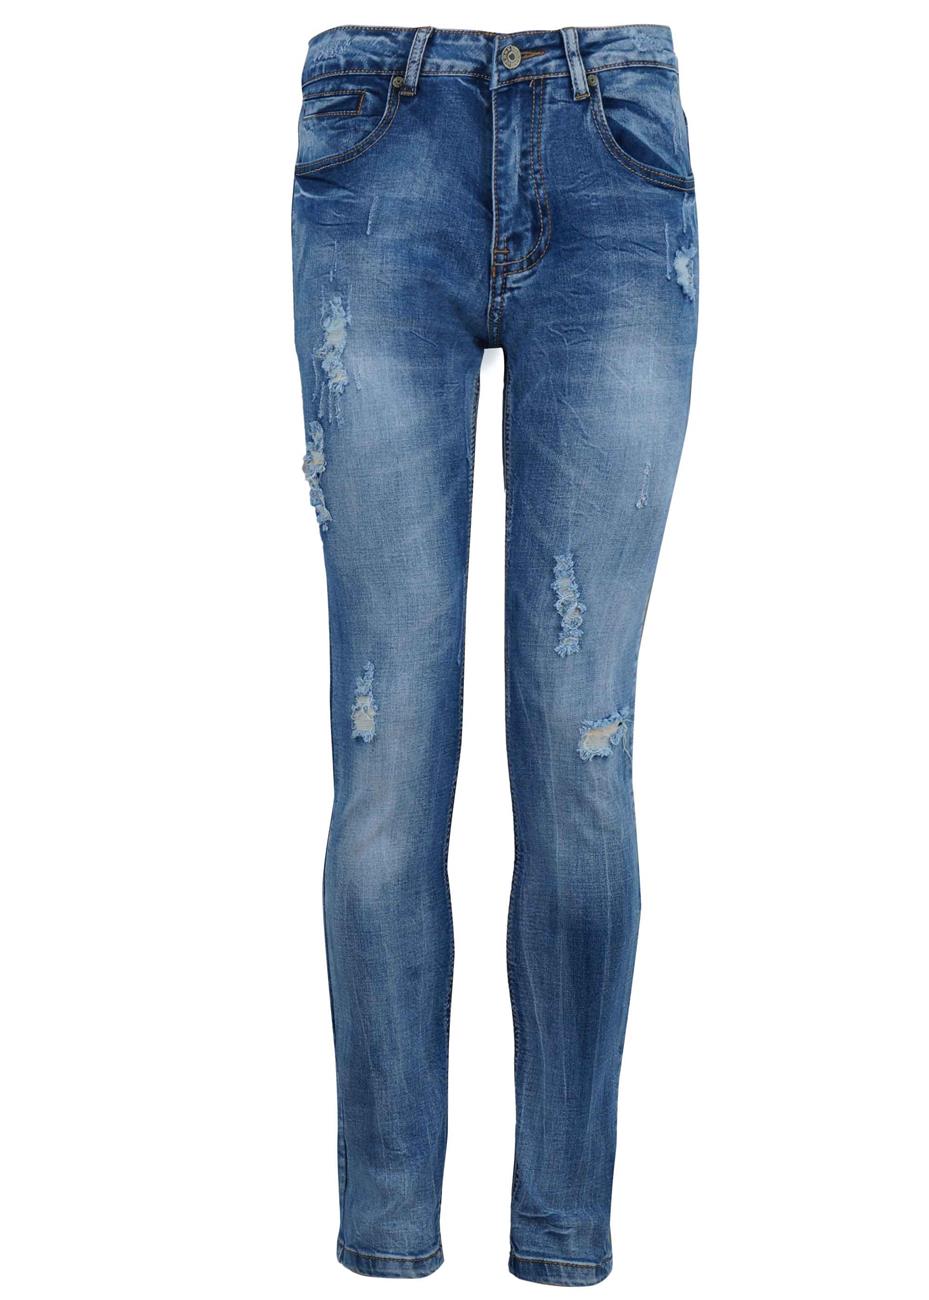 Ανδρικό παντελόνι jean skinny fit με ελαφριά σκισίματα. Denim collection.